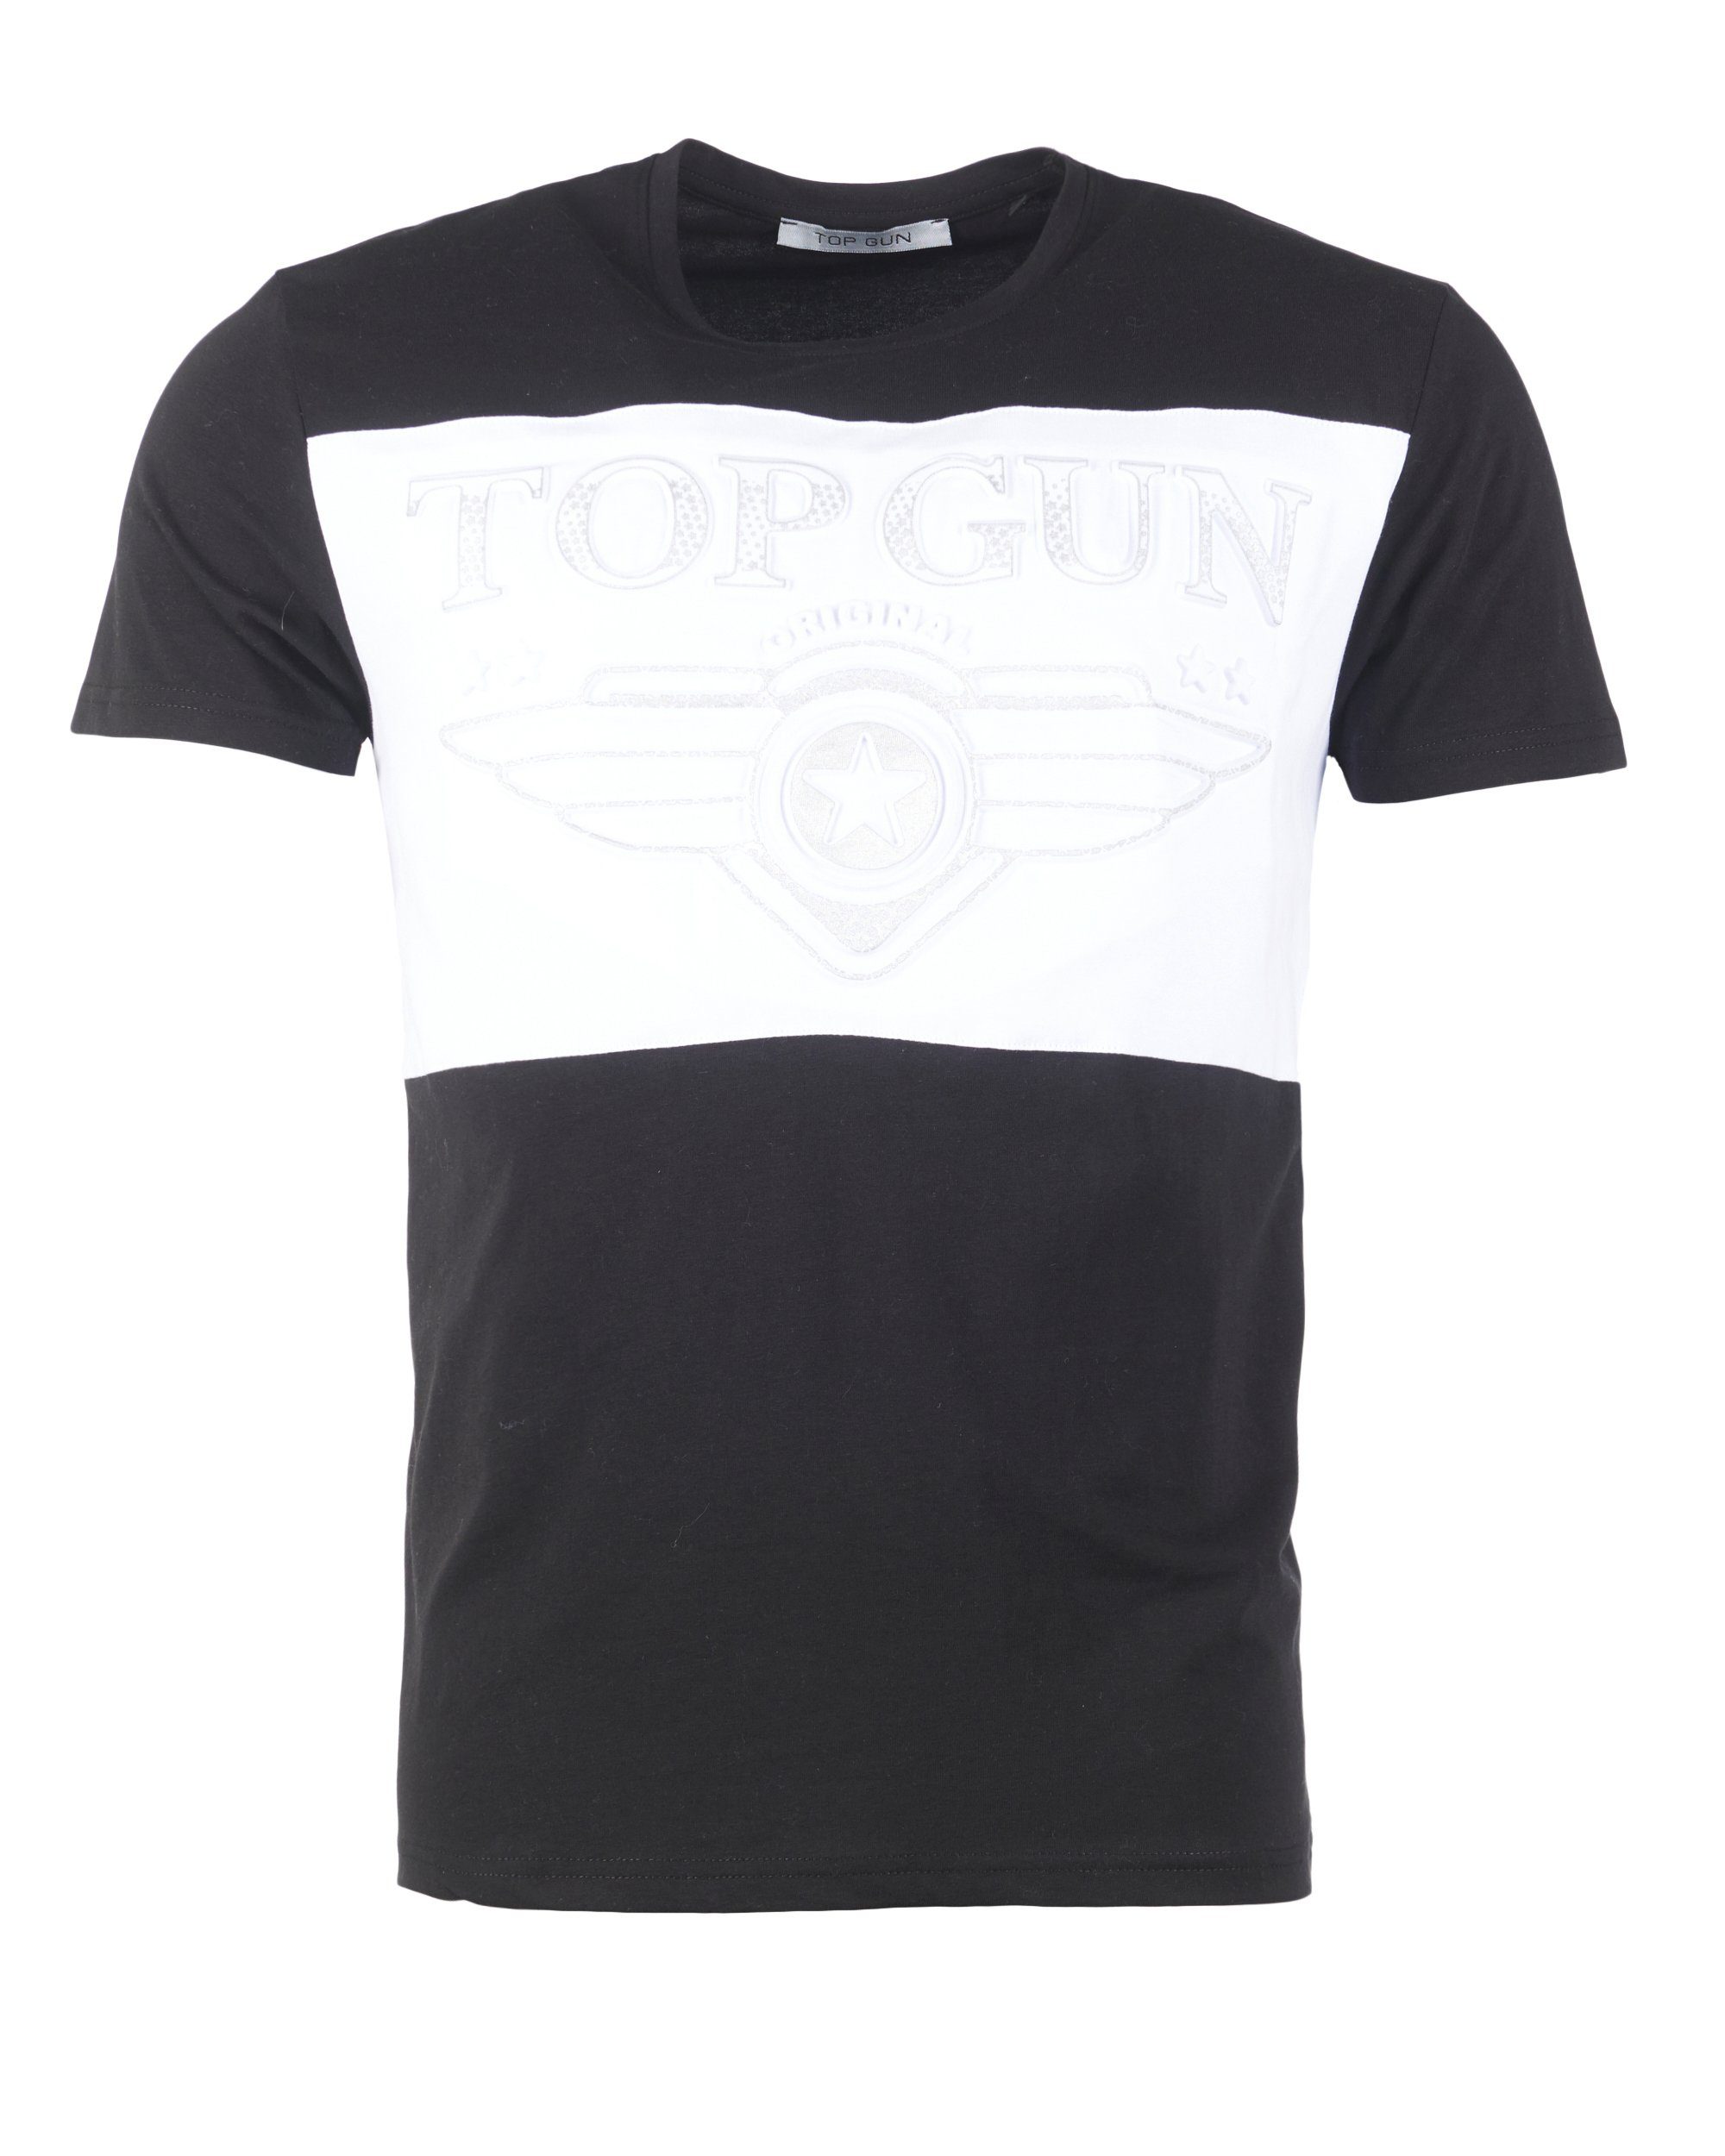 Destroy black/white TOP GUN T-Shirt TG20193153